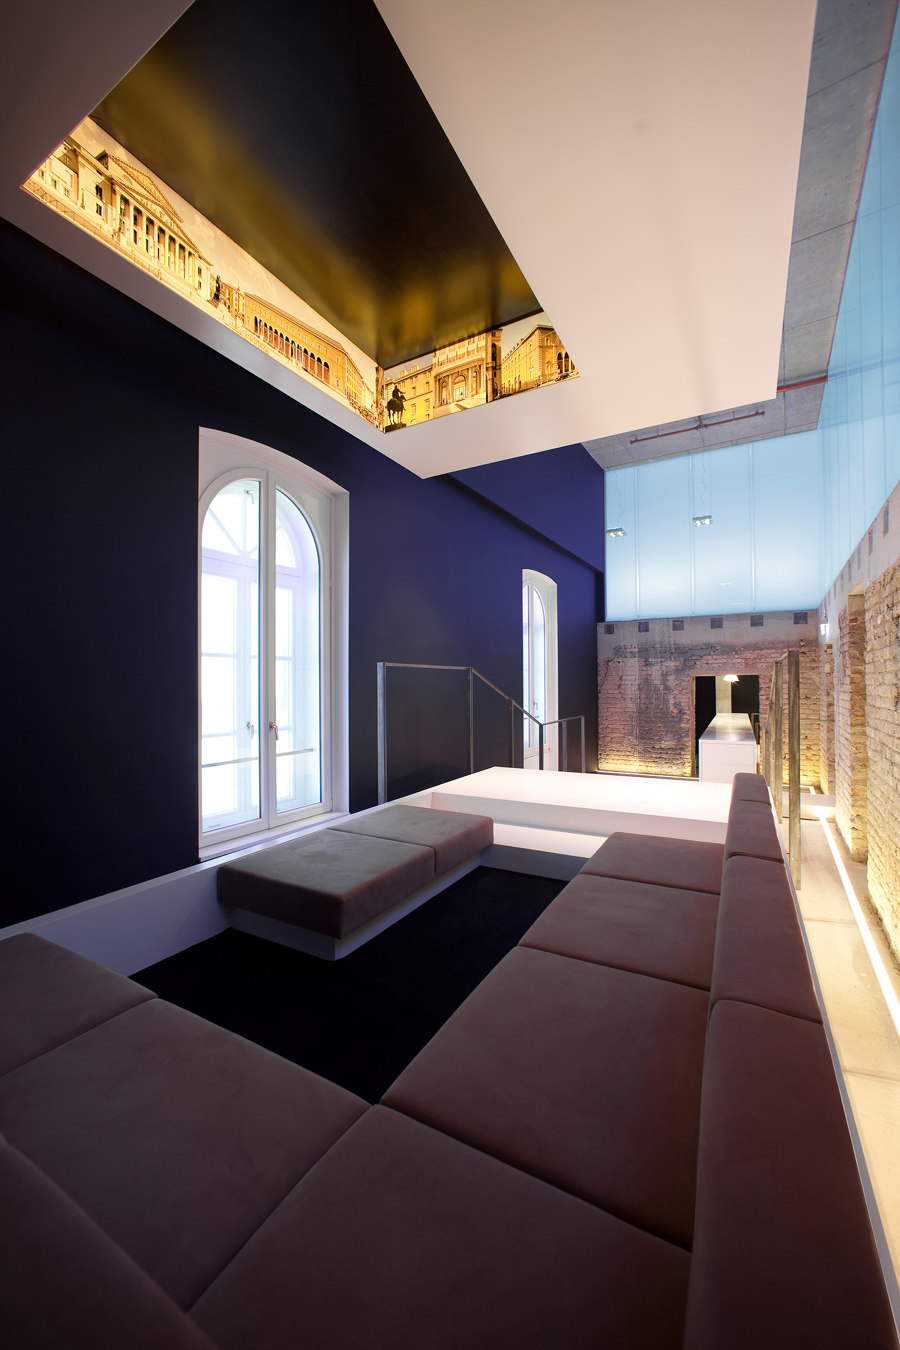 Palais an der Oper by CSMM – Architecture Matters | Office facilities